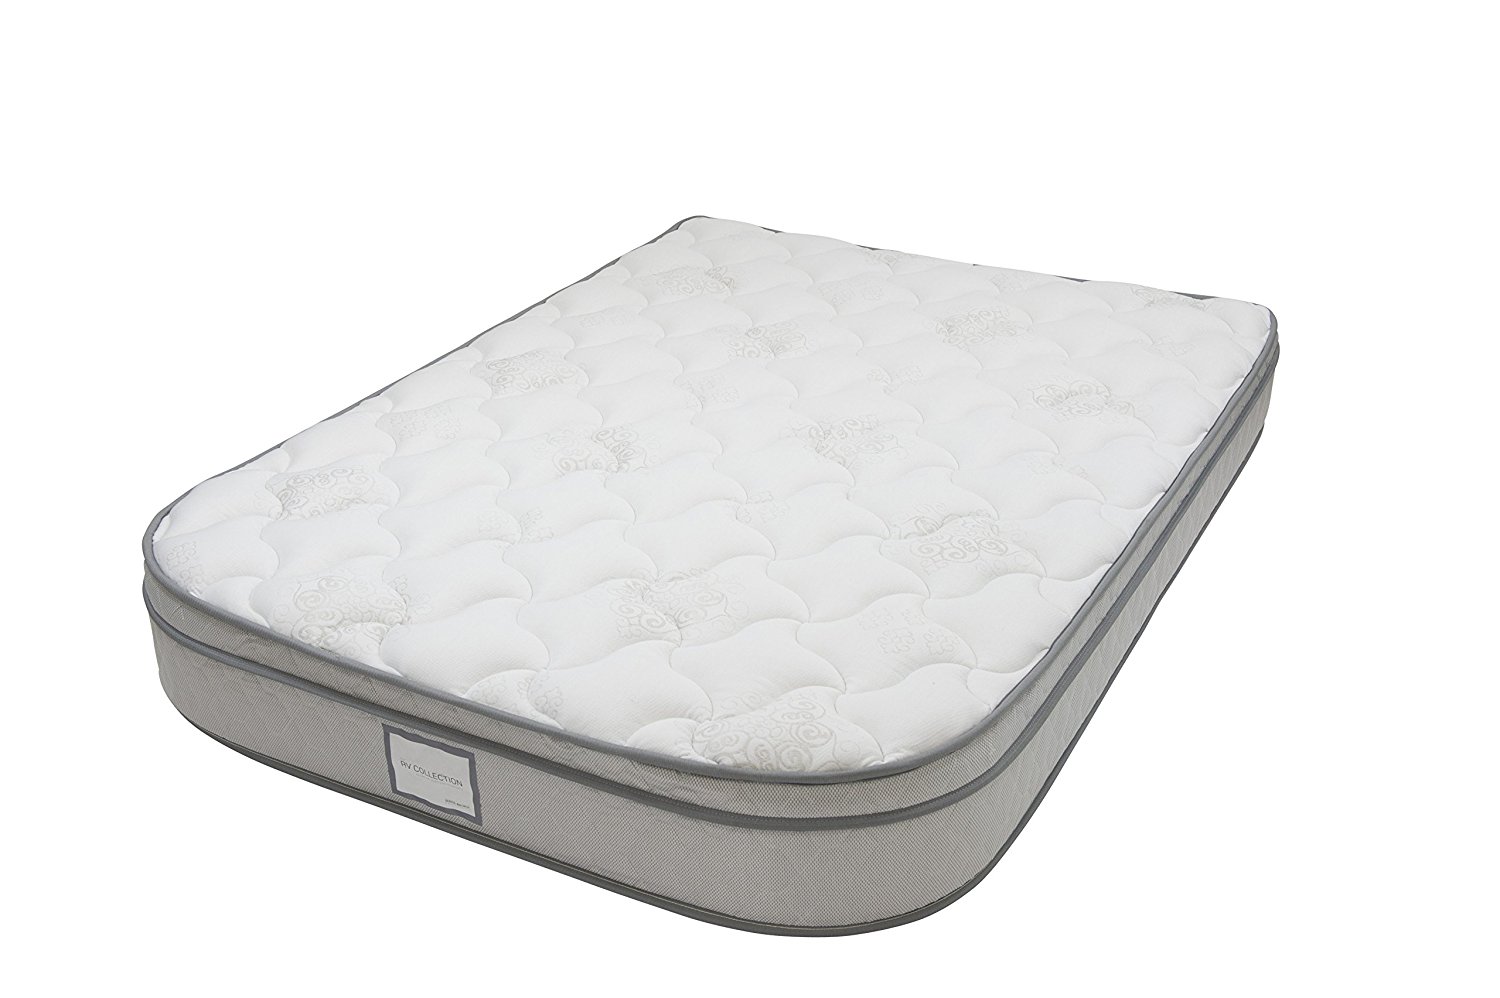 short queen size mattress for rv